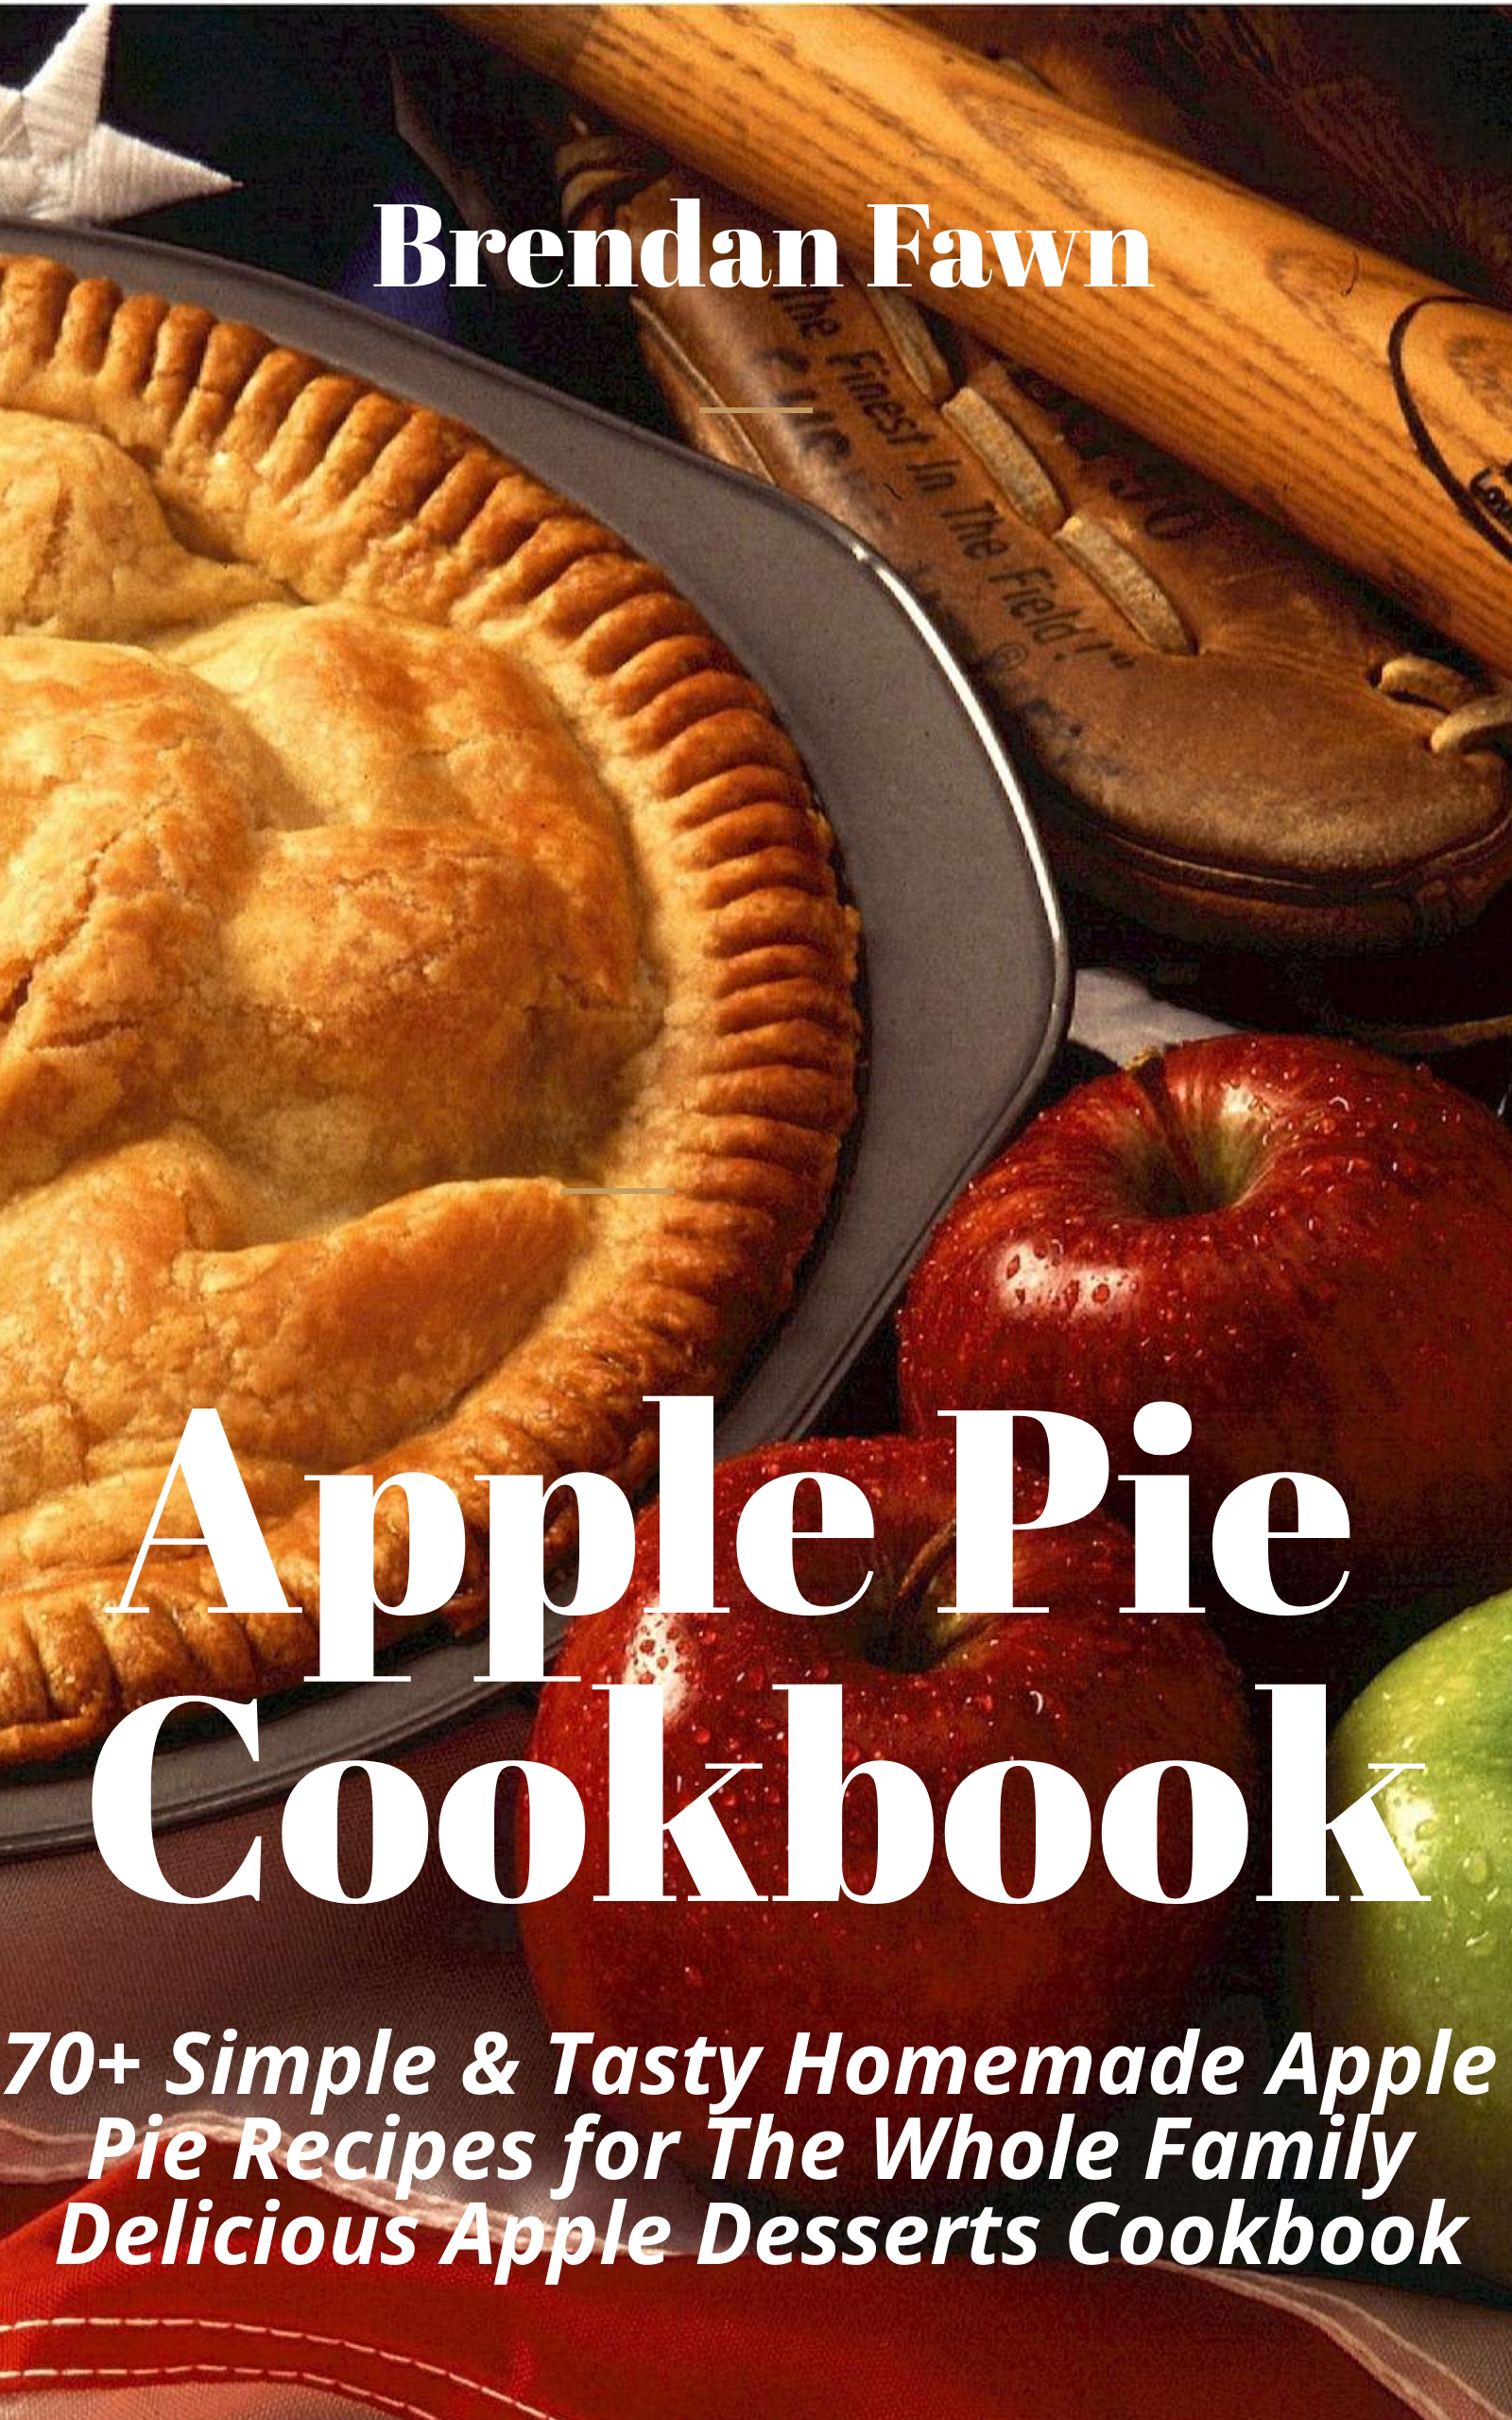 FREE: Apple Pie Cookbook by Brendan Fawn